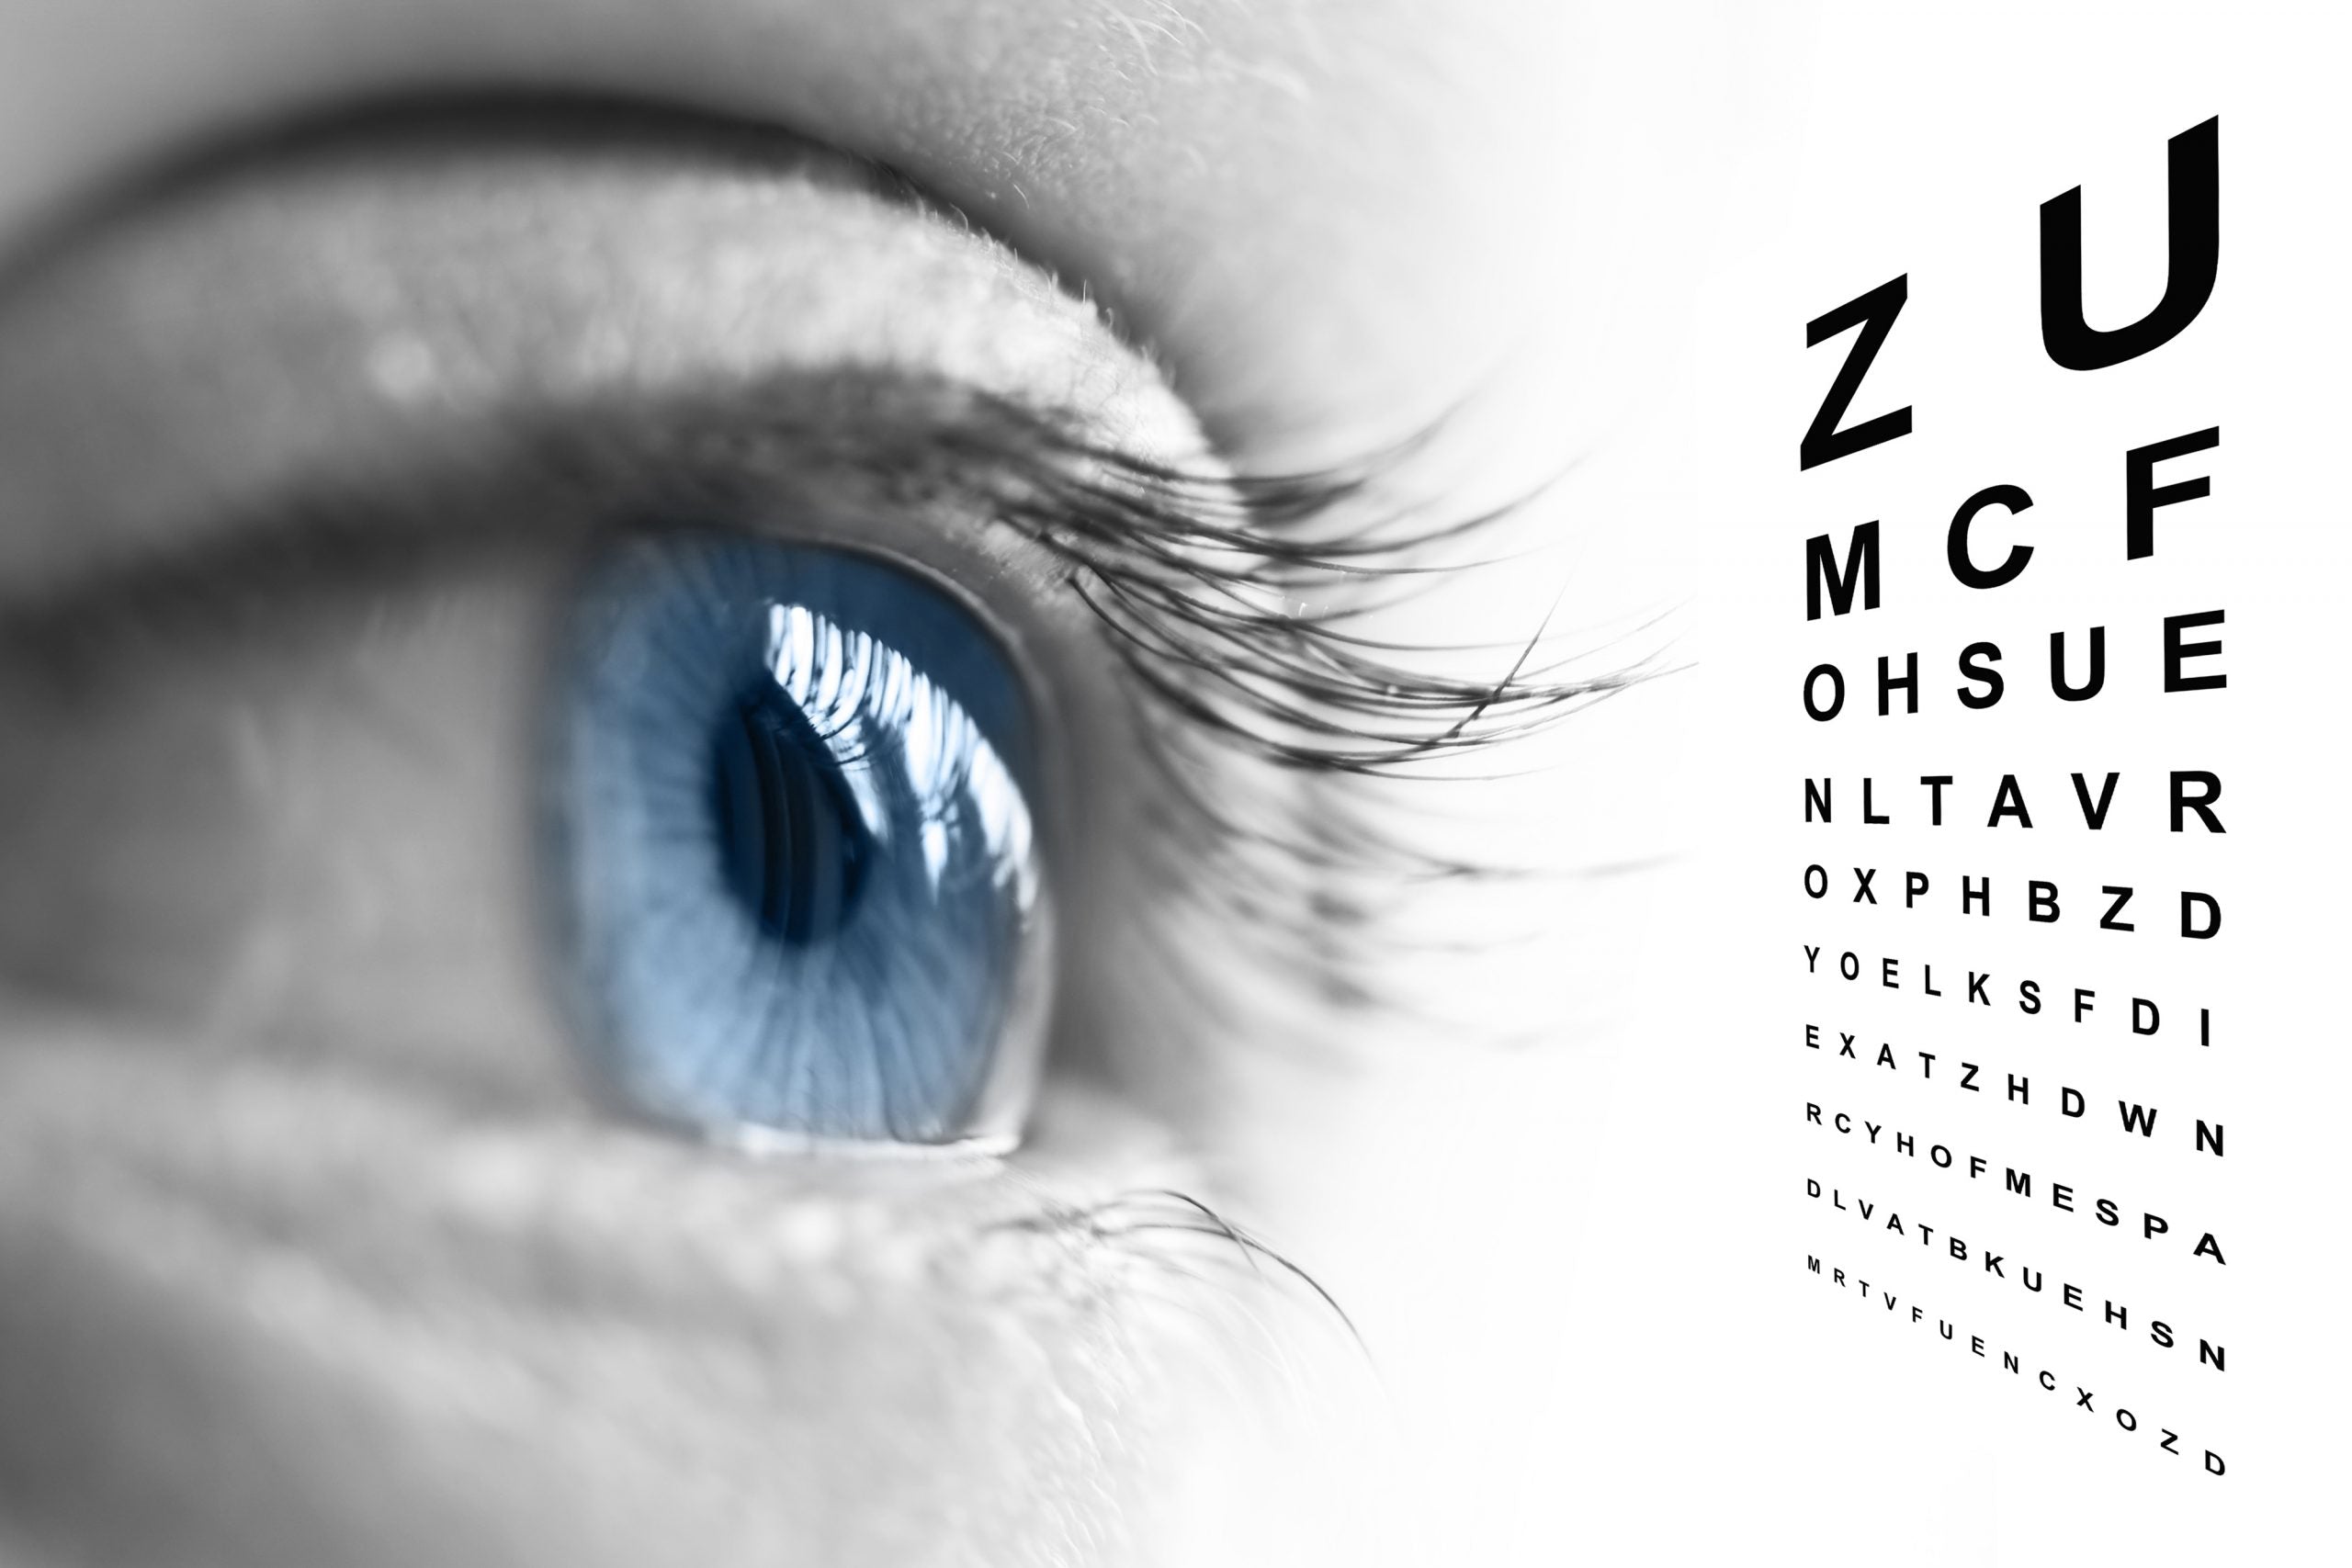 Нечеткое зрение: Причины и лечение нечеткого зрения